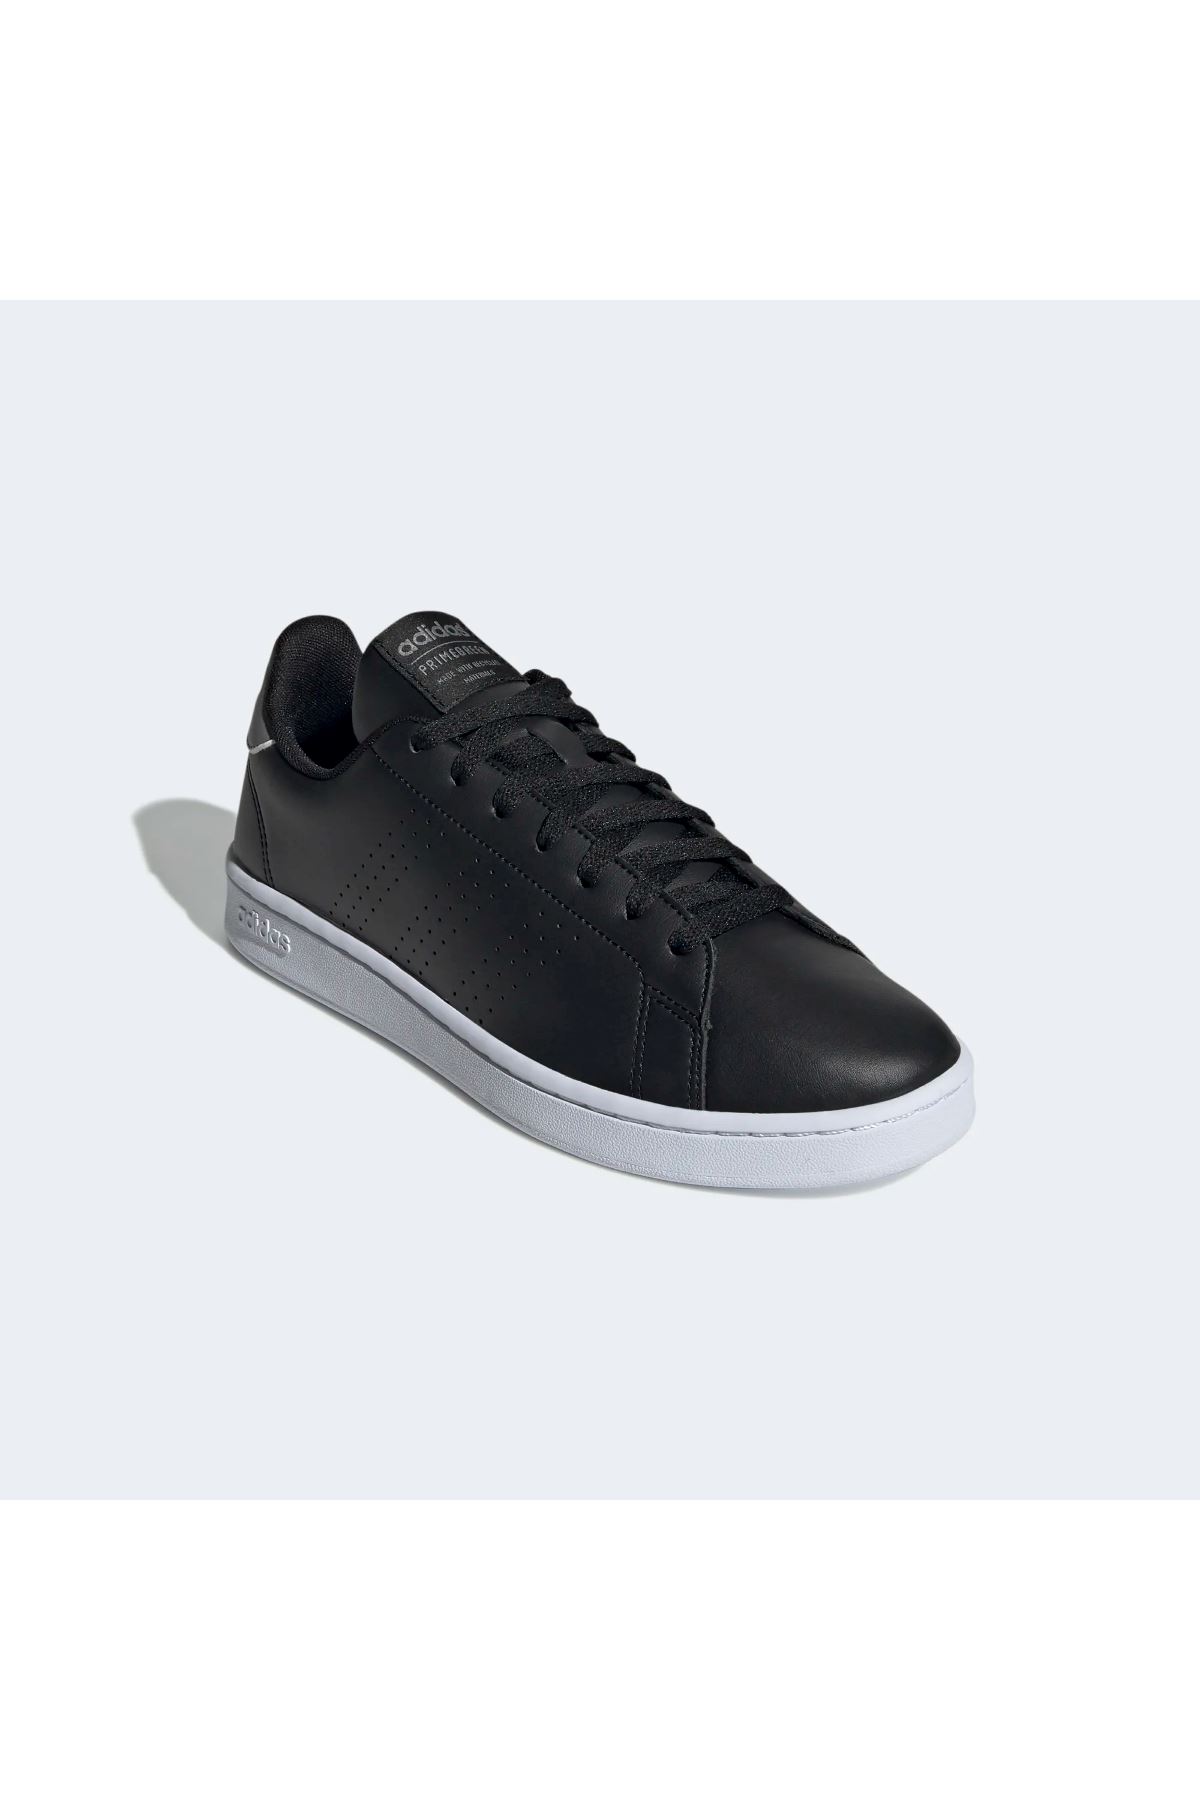 Adidas Advantage Erkek Siyah Spor Ayakkabı - GZ5301